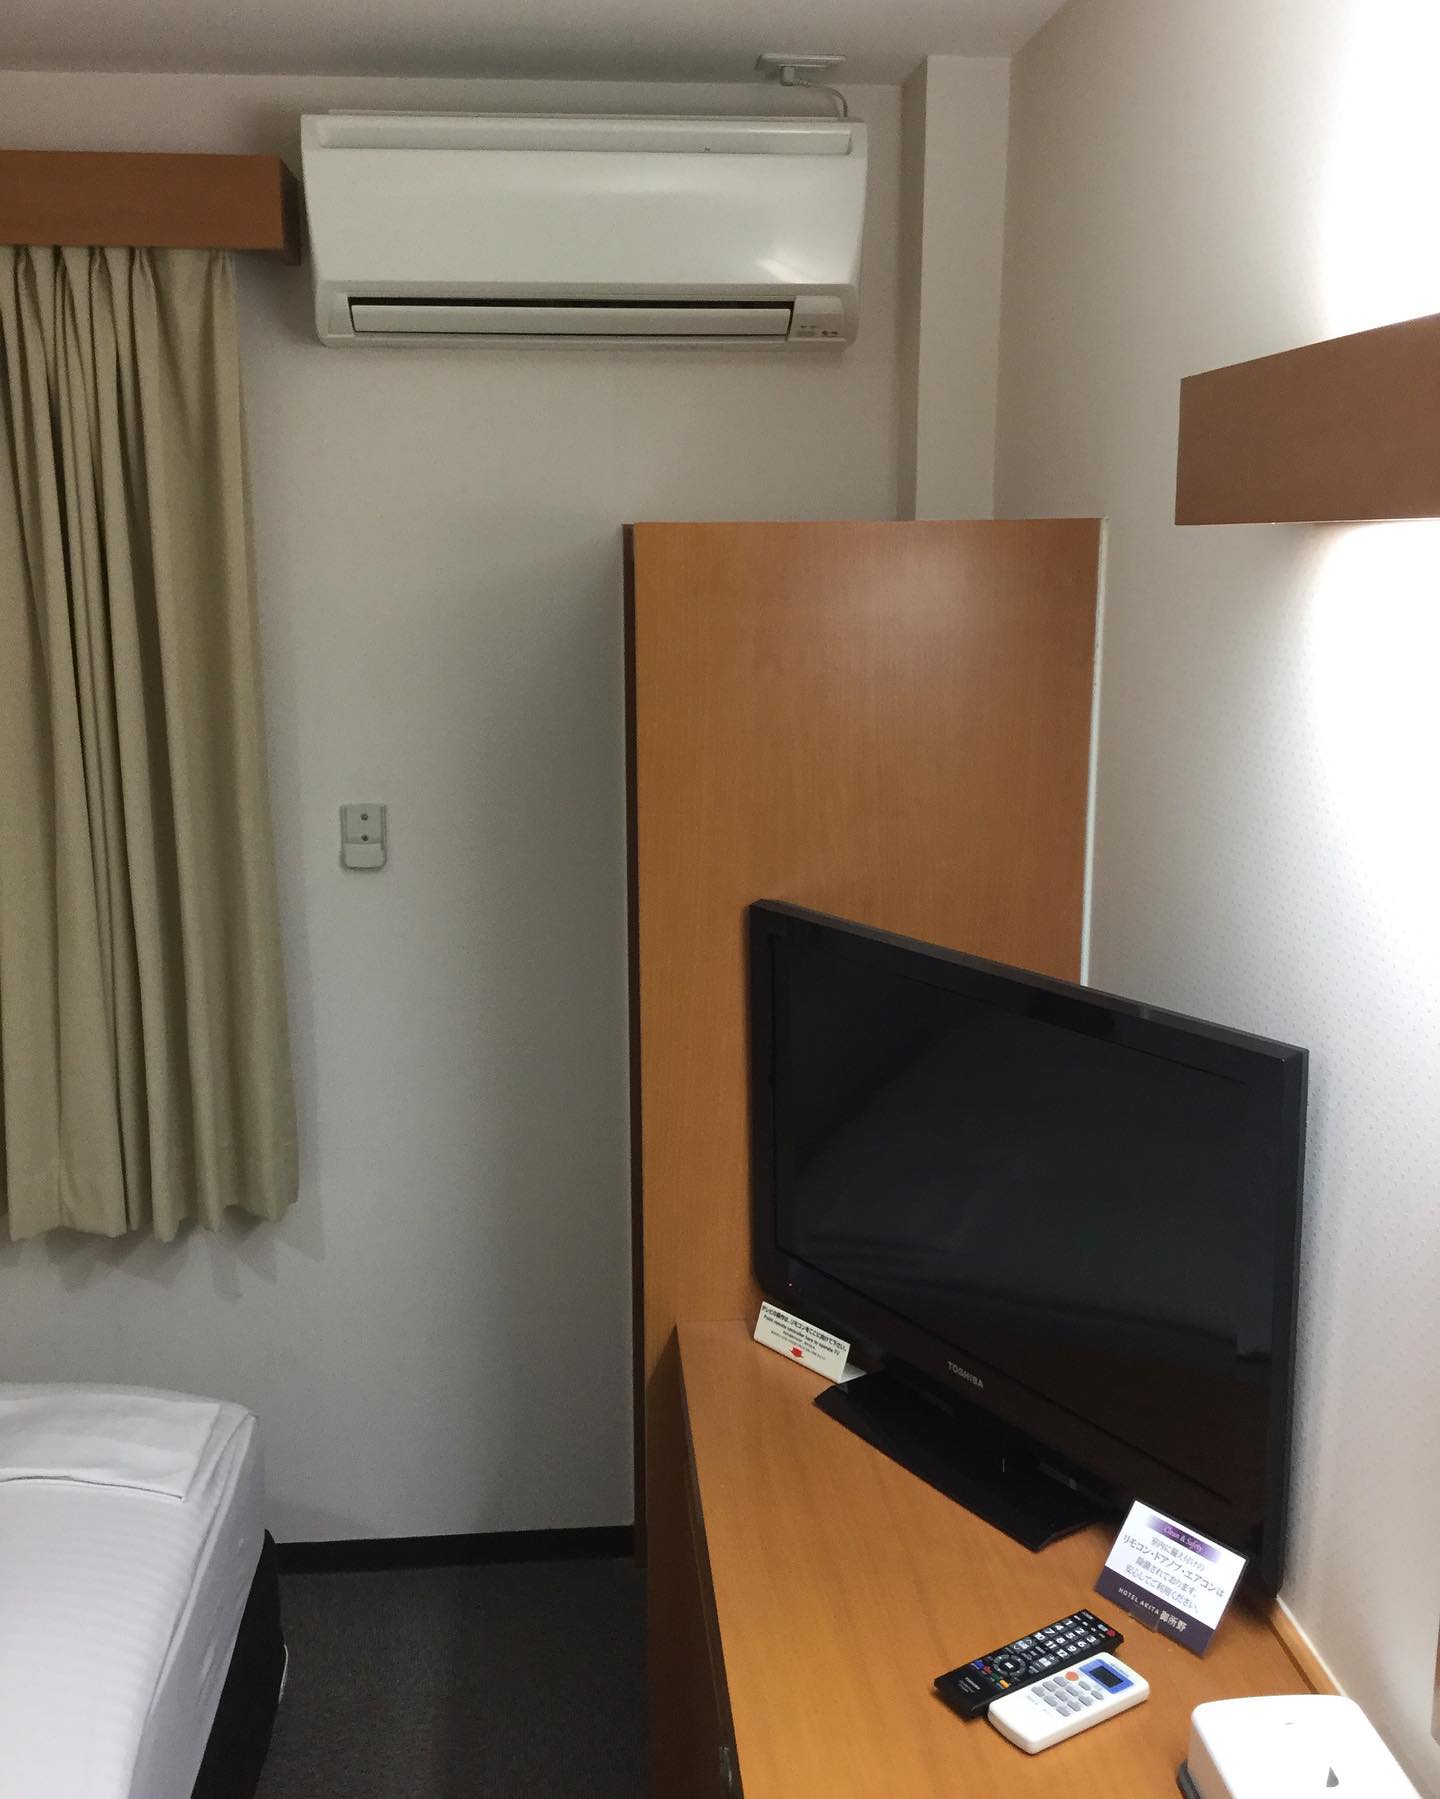 ホテル秋田御所野です。お部屋は全室個別のエアコンと32型の液晶テレビを完備しております。#秋田市ホテル　#ビジネスホテル　#ホテルテレビ　#ホテルエアコン　#御所野　　#ホテルルーム　#ホテル秋田御所野　#ルームエアコン